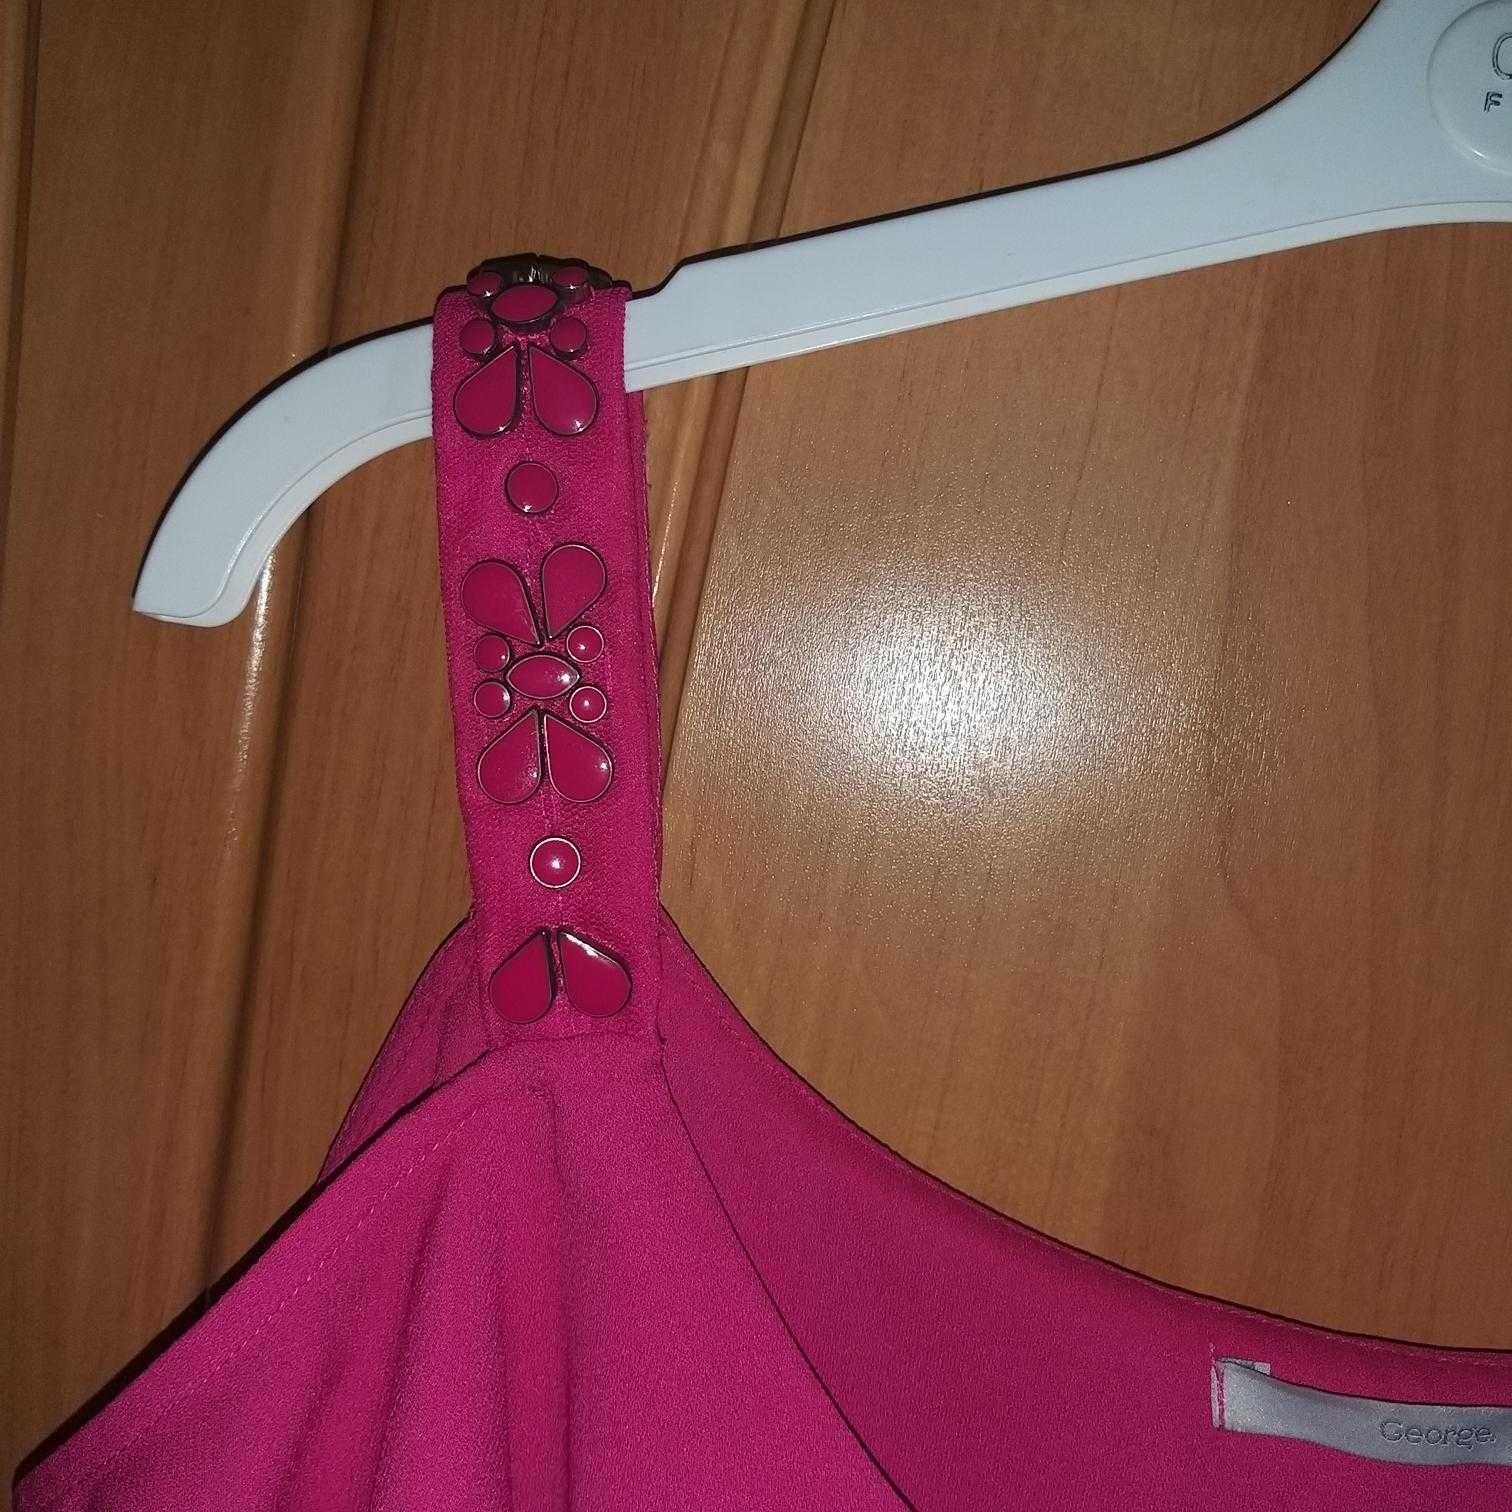 Bluzka hiszpanka firmy George roz  40  kolor rozowy